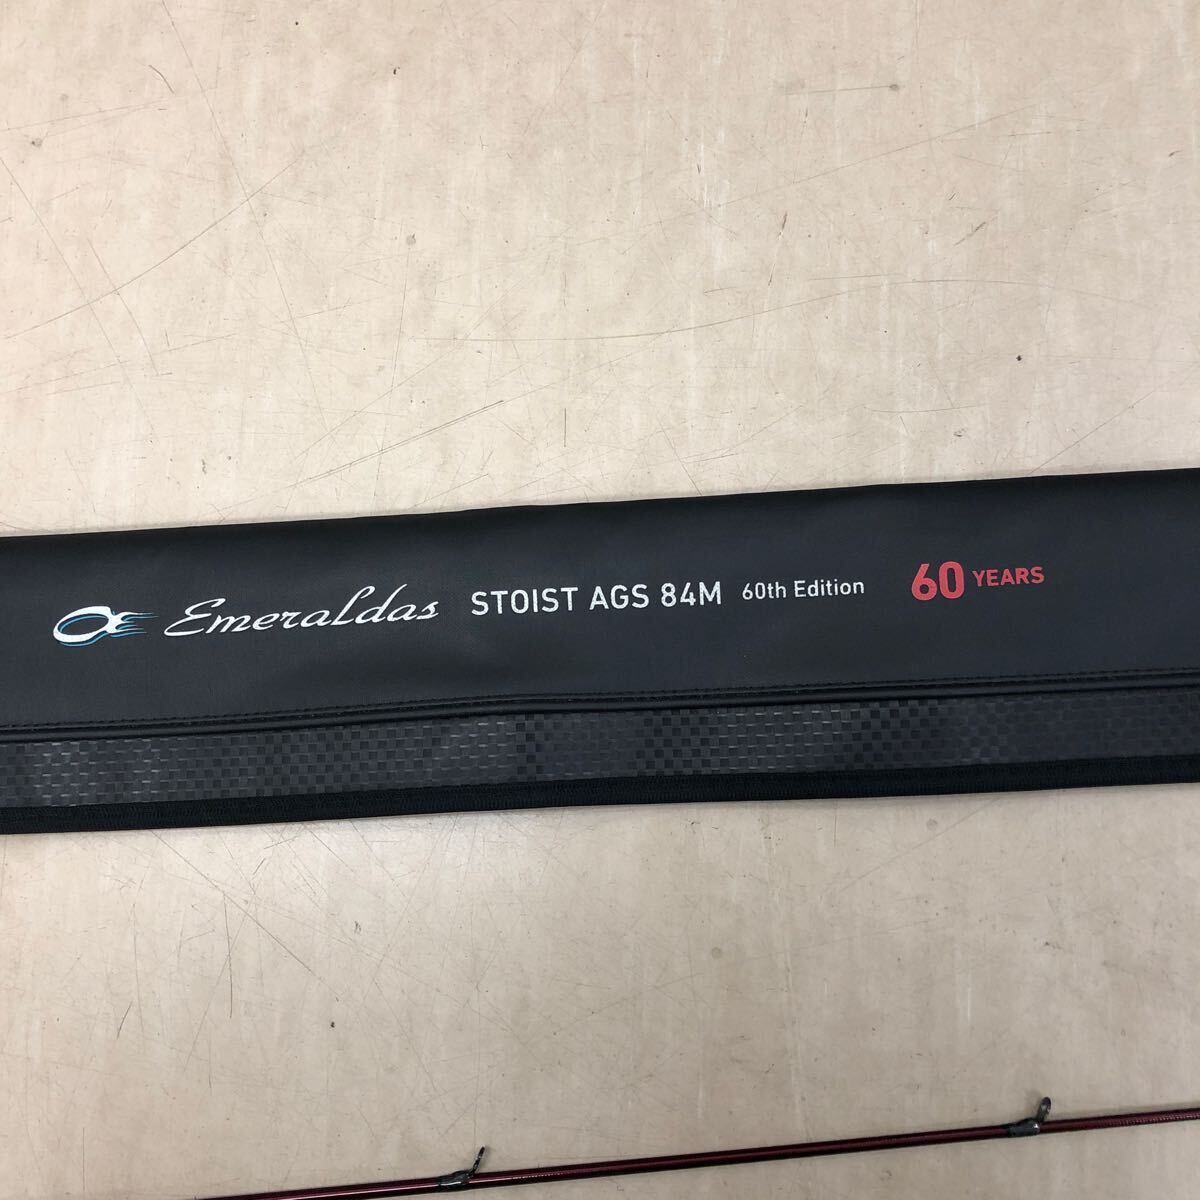 美品 ロッド ダイワ DAIWA エメラルダス ストイスト60周年記念モデル STOIST AGS 84M 60th Edition 釣竿・釣具関連の画像2